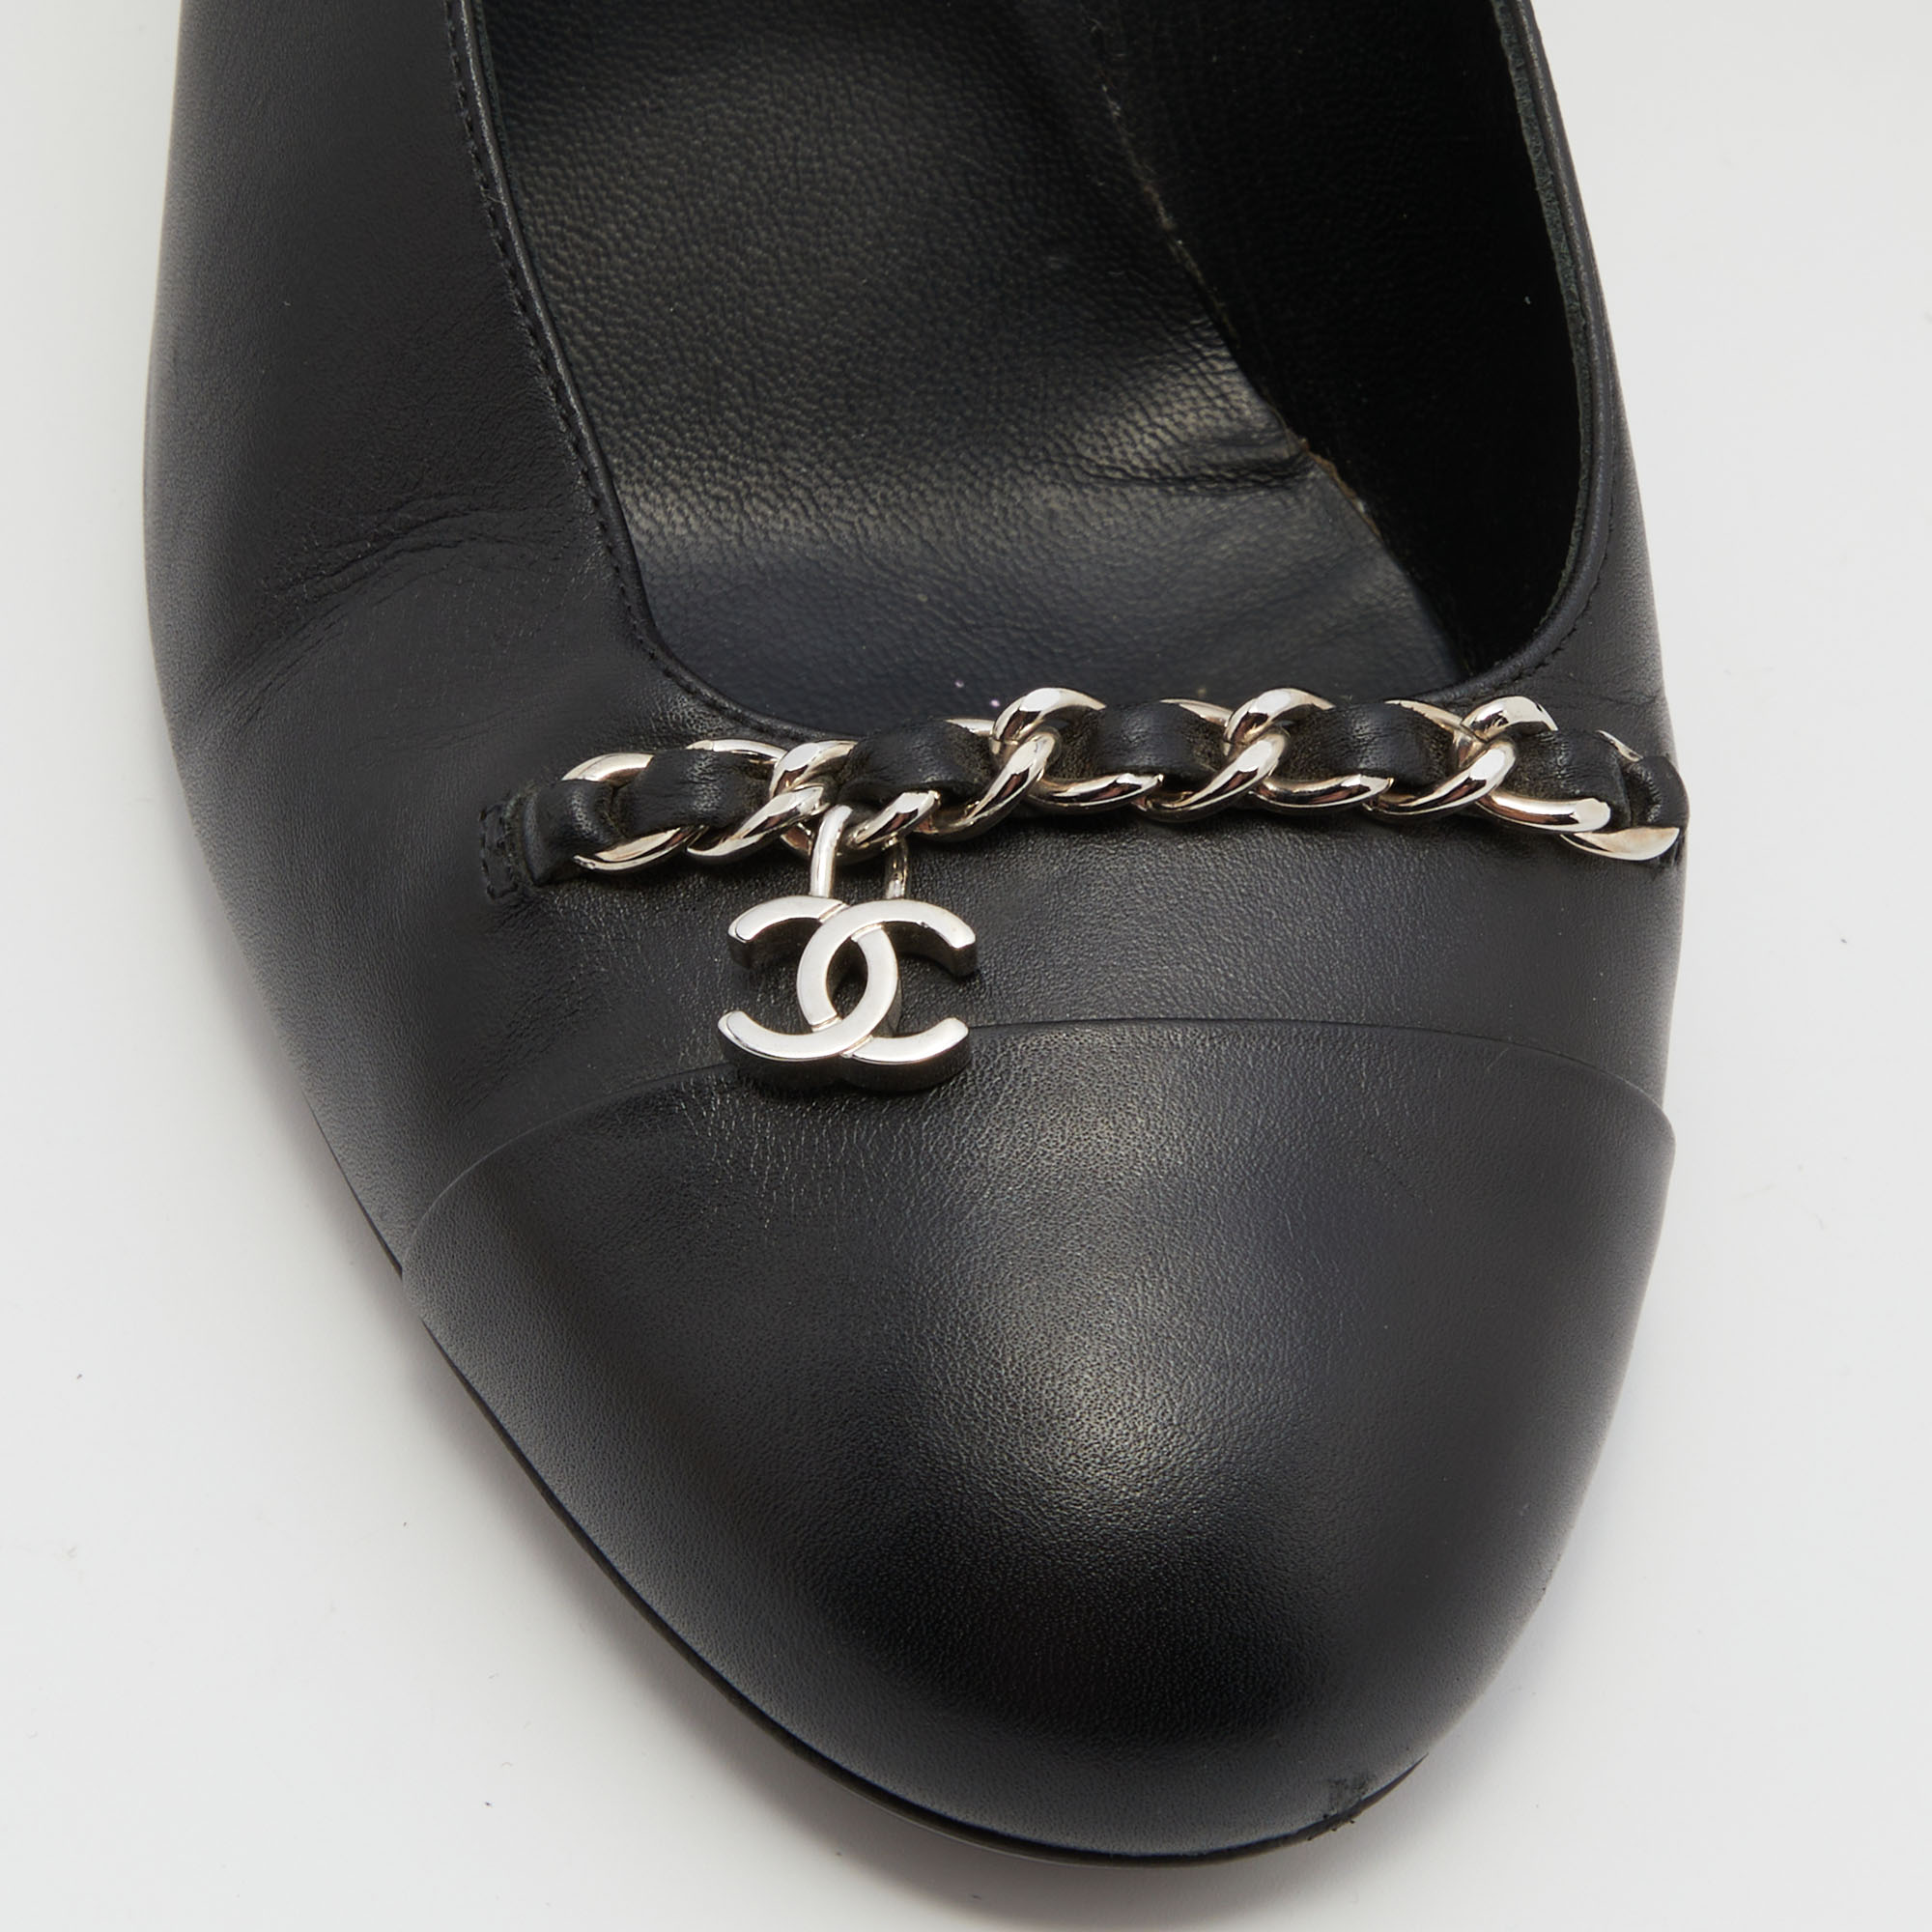 Chanel Black Leather CC Chain Link Cap Toe Pumps Size 41